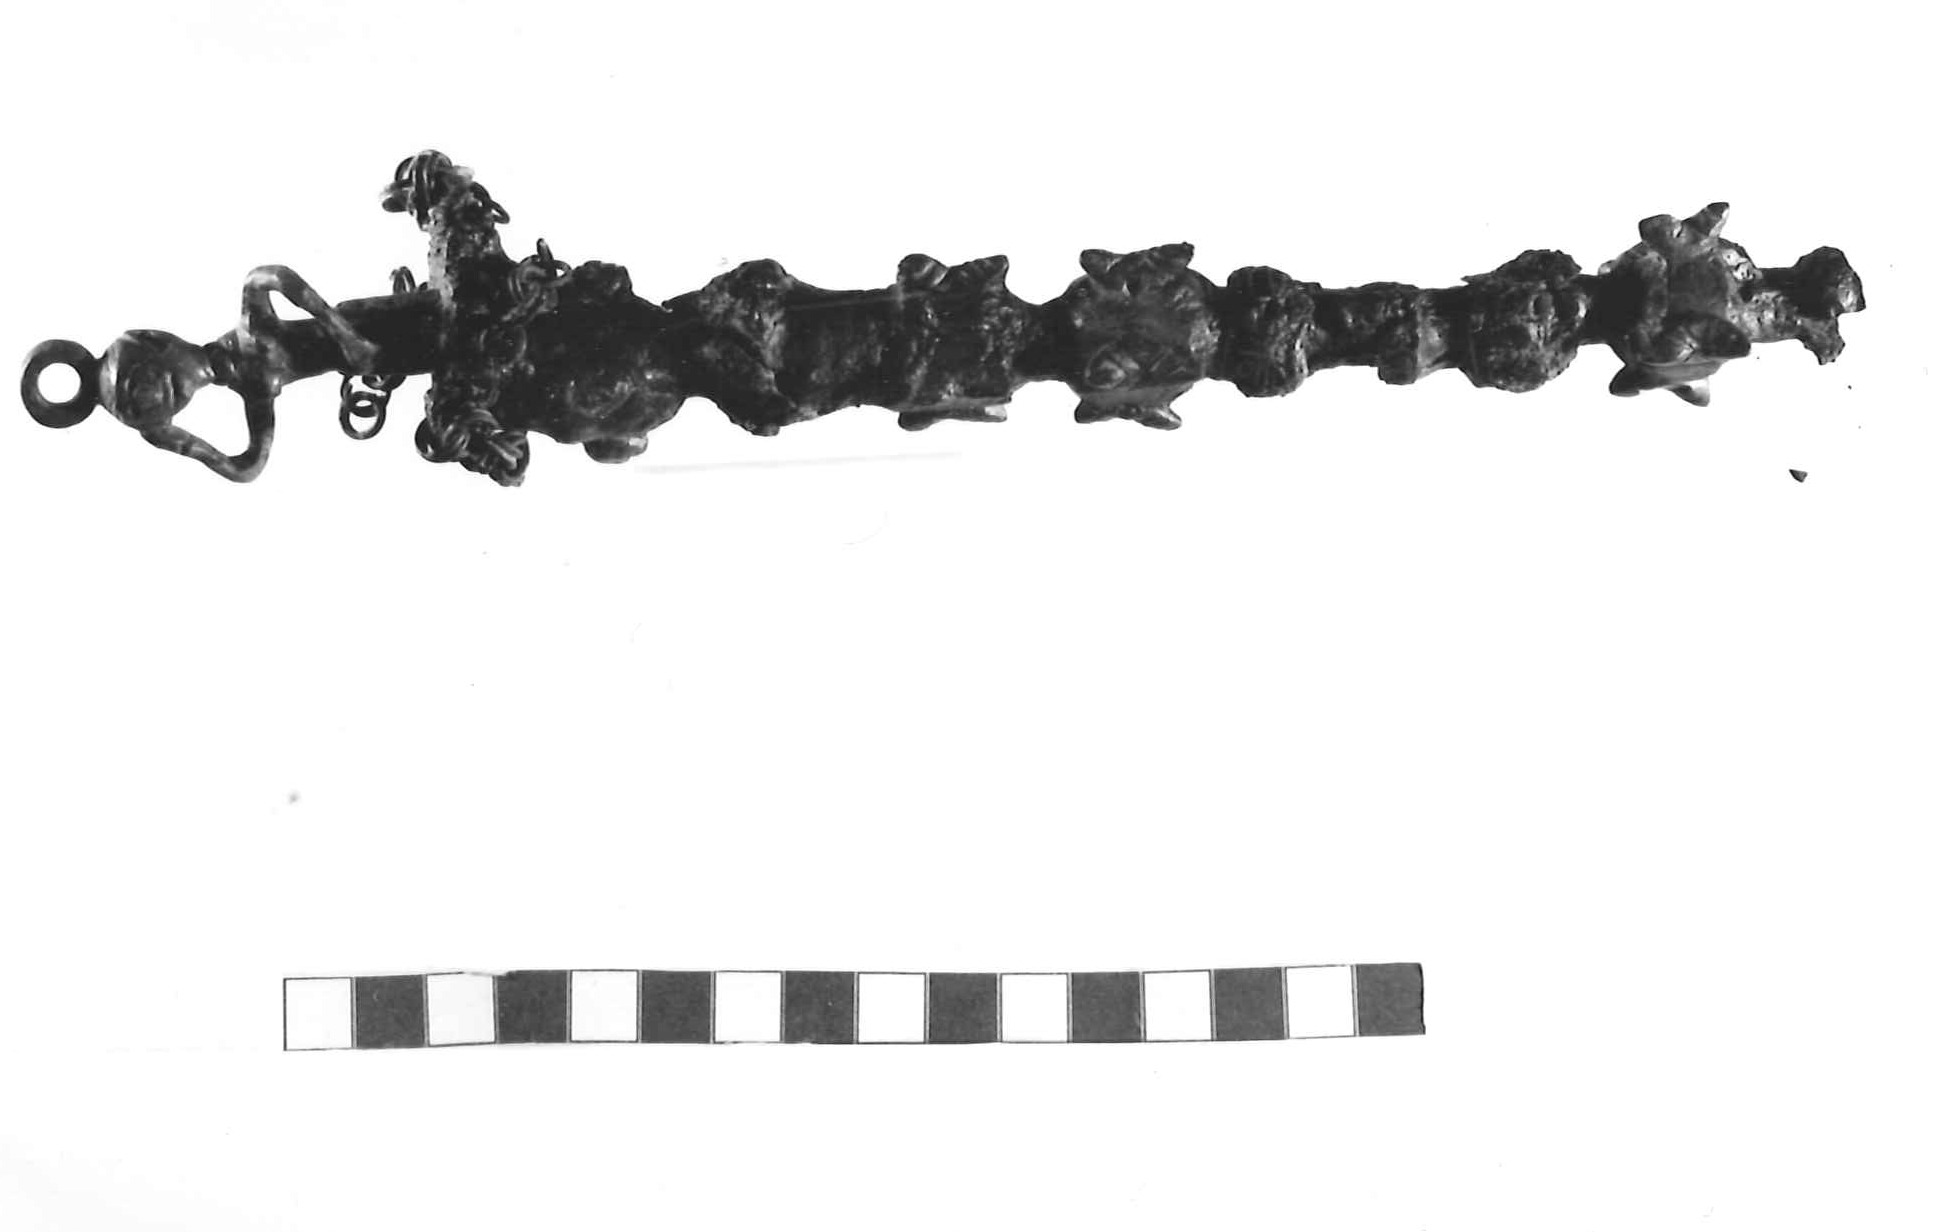 bastone di comando - Piceno III (secc. VII-VI a.C)